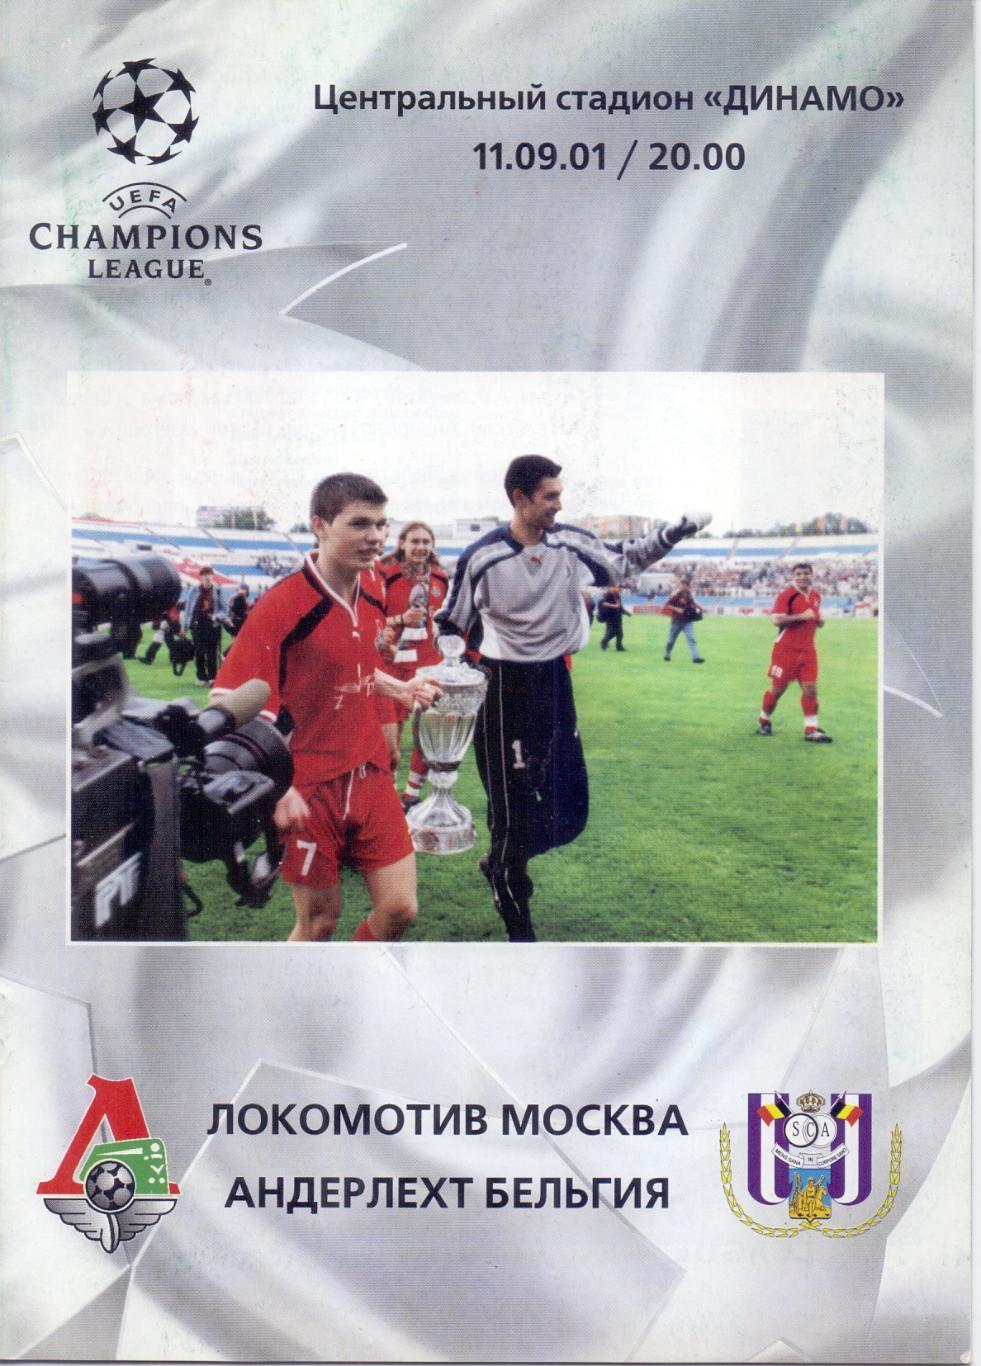 Лига Чемпионов. Локомотив Москва - Андерлехт. 11.09.2001 года.